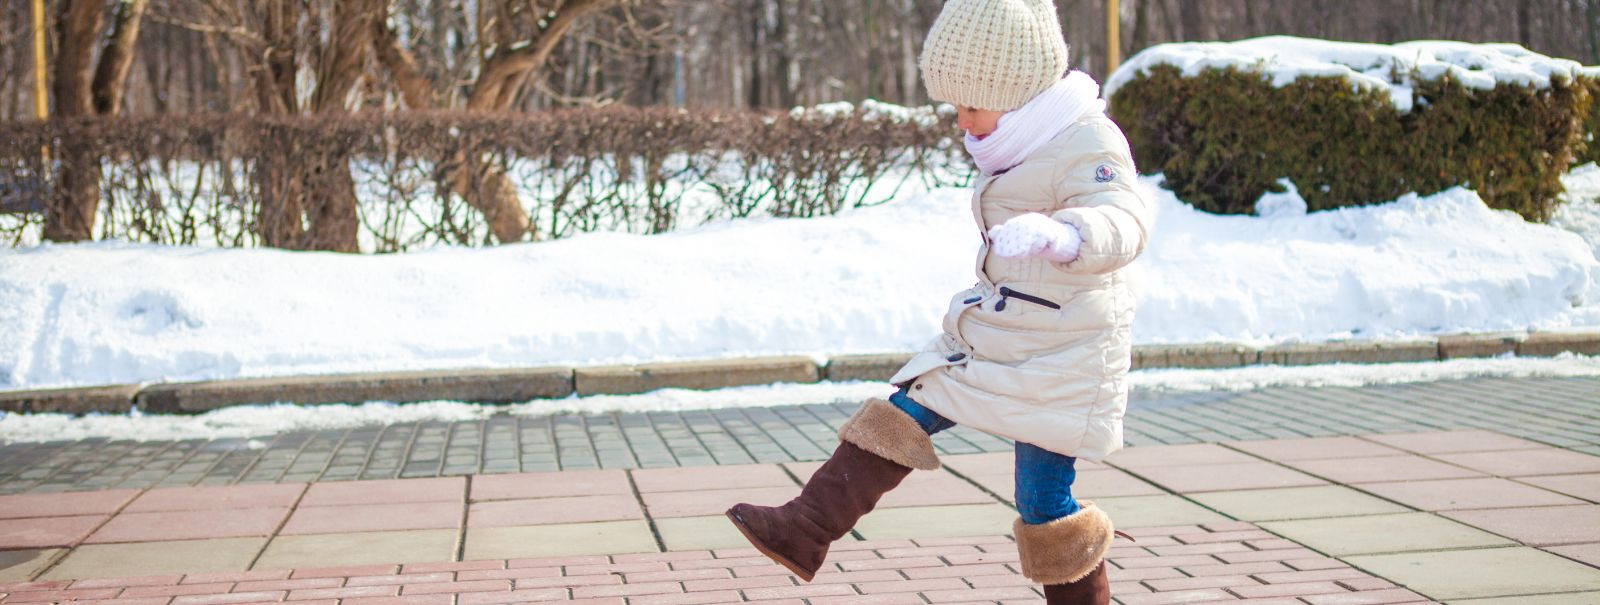 Kui talvehooaeg läheneb, on oluline tagada, et teie väikelapsel oleks õiged jalatsid. Talvesaapad hoiavad väikeste jalgade soojad ja kuivad, kuid pakuvad ka vaj